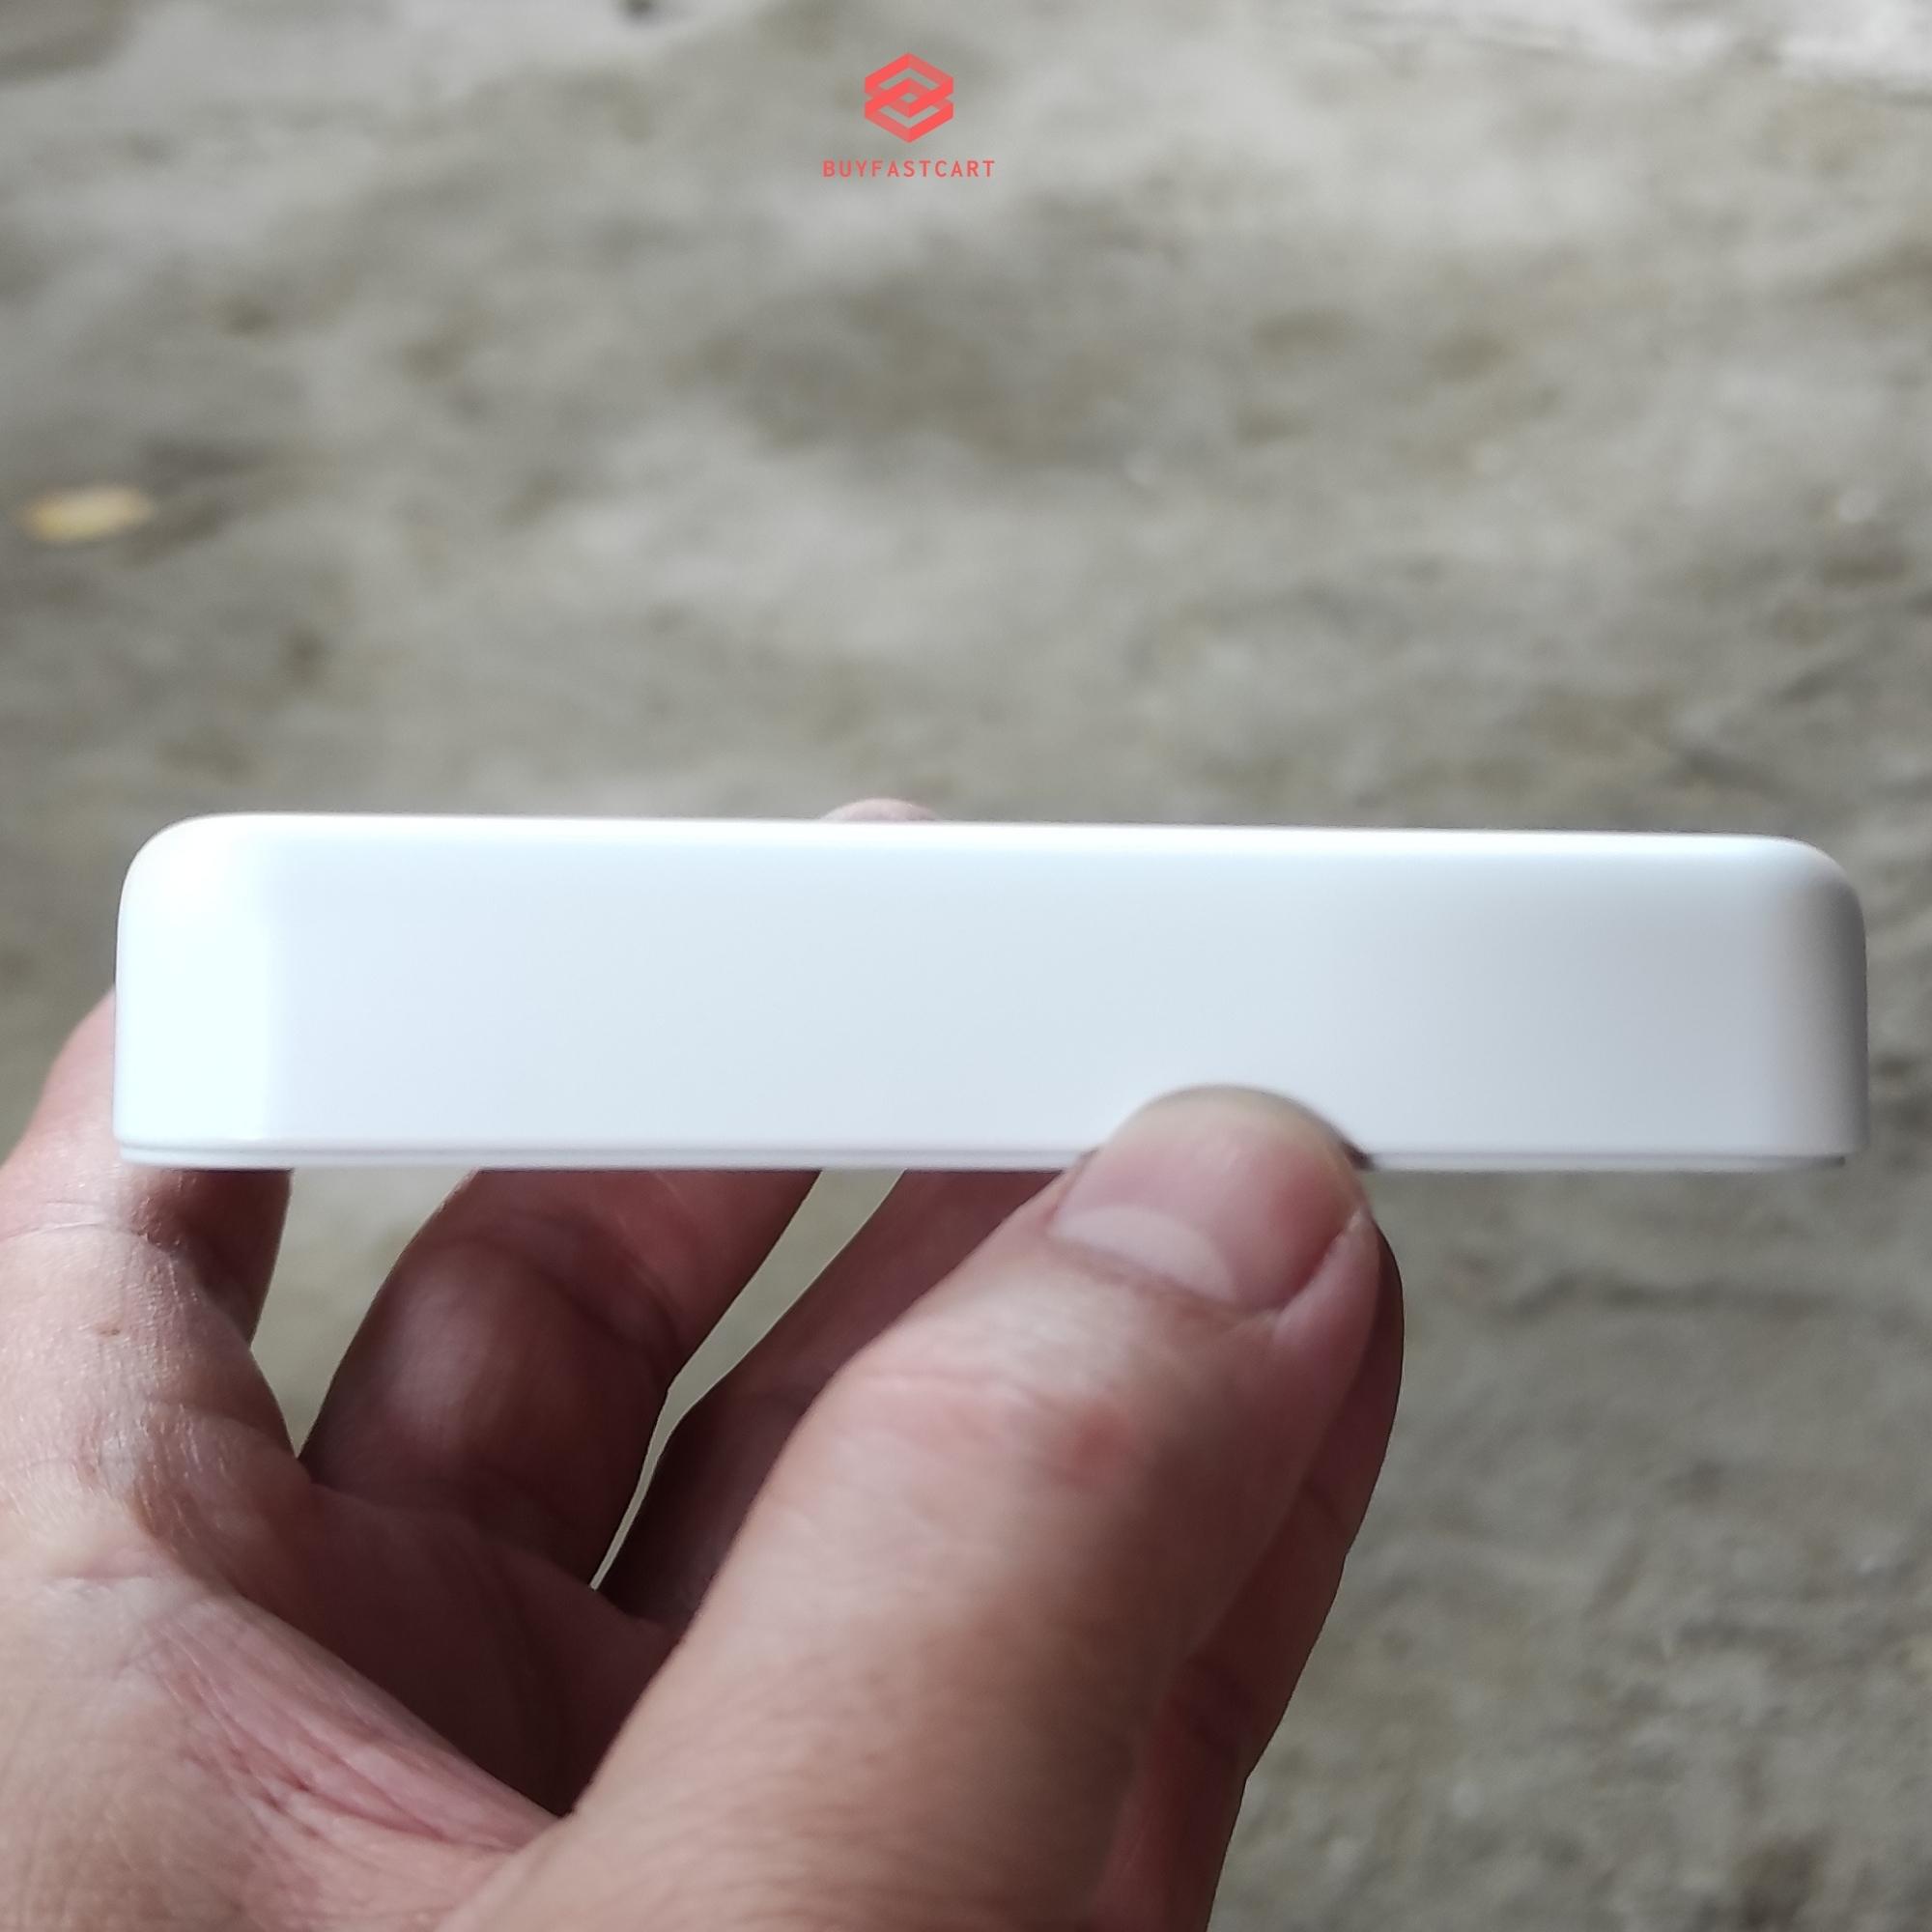 Pin sạc dự phòng không dây Buyfastcart B1 10.000mAh dùng sạc cho iPhone 12, 13 - Hàng chính hãng